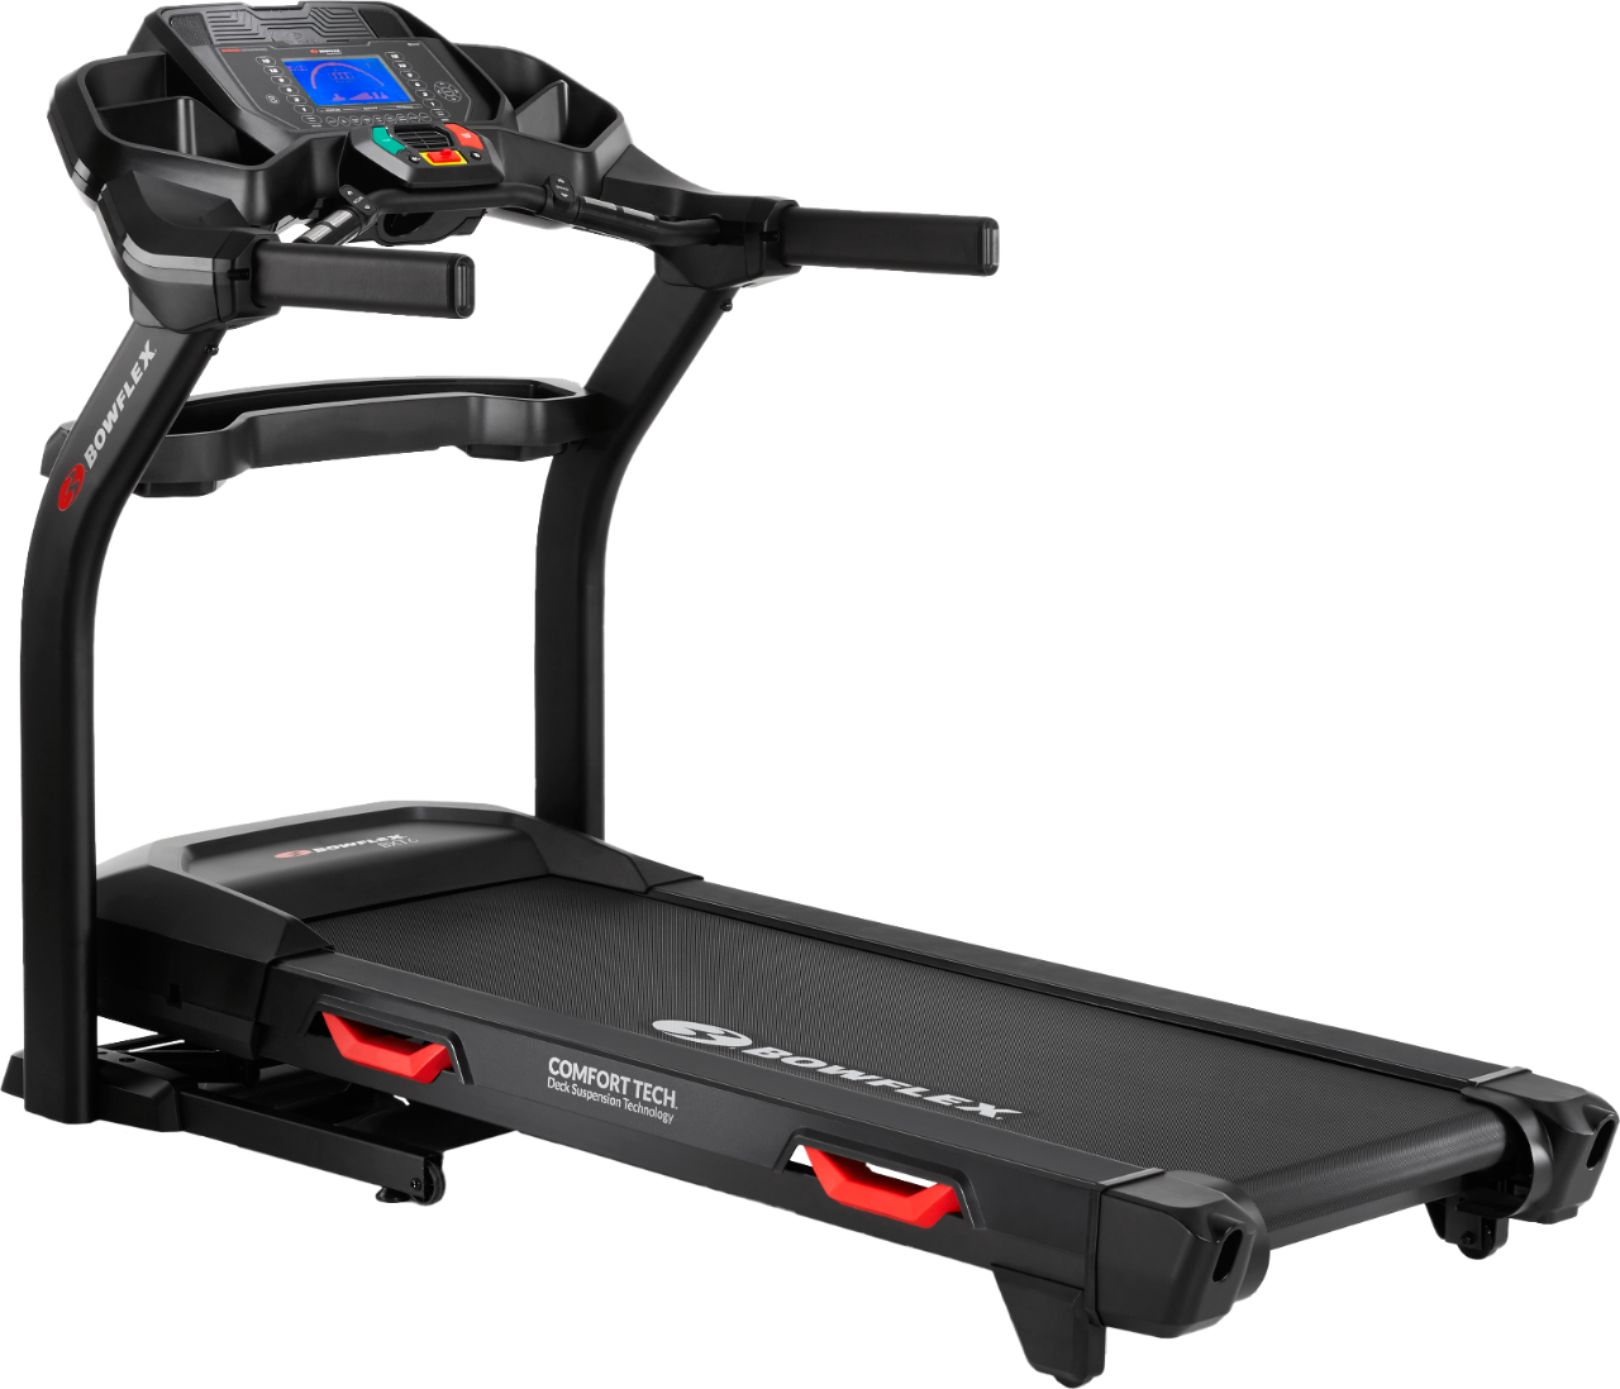 Bowflex BXT6 Treadmill Black 100778 - Best Buy $899.99